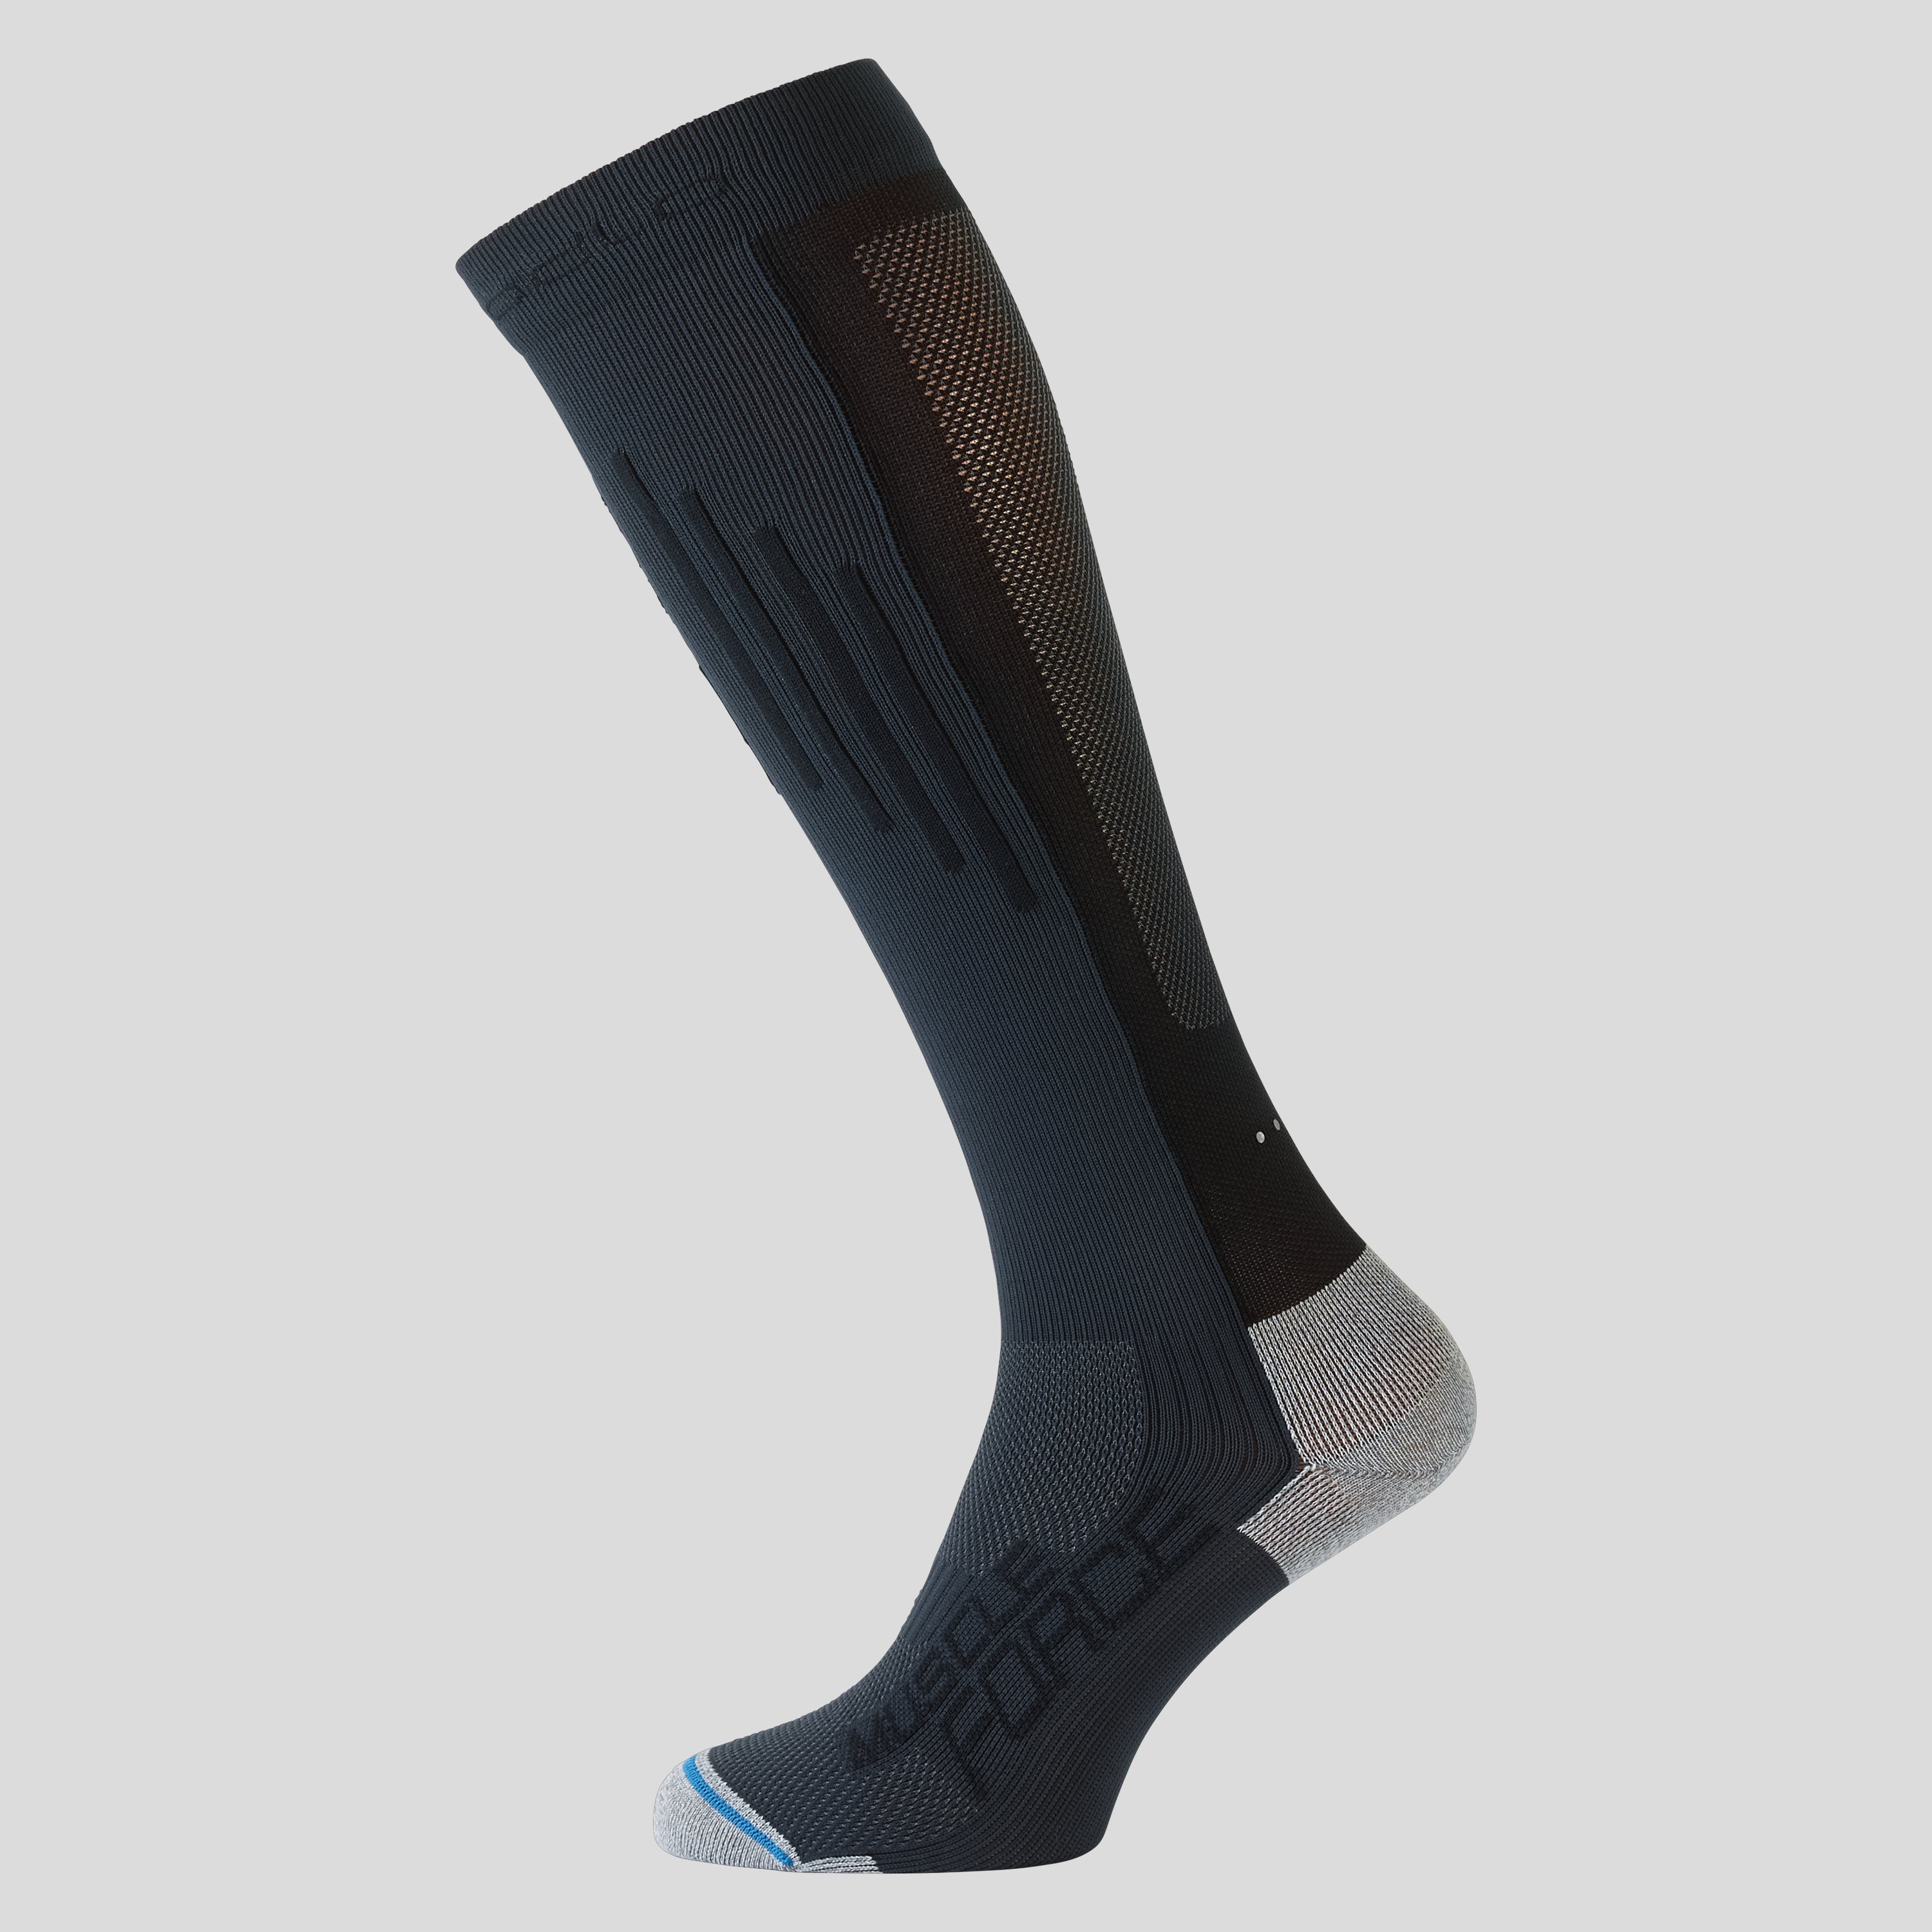 ODLO Muscle Force Light extralange Socken, 42-44, grau